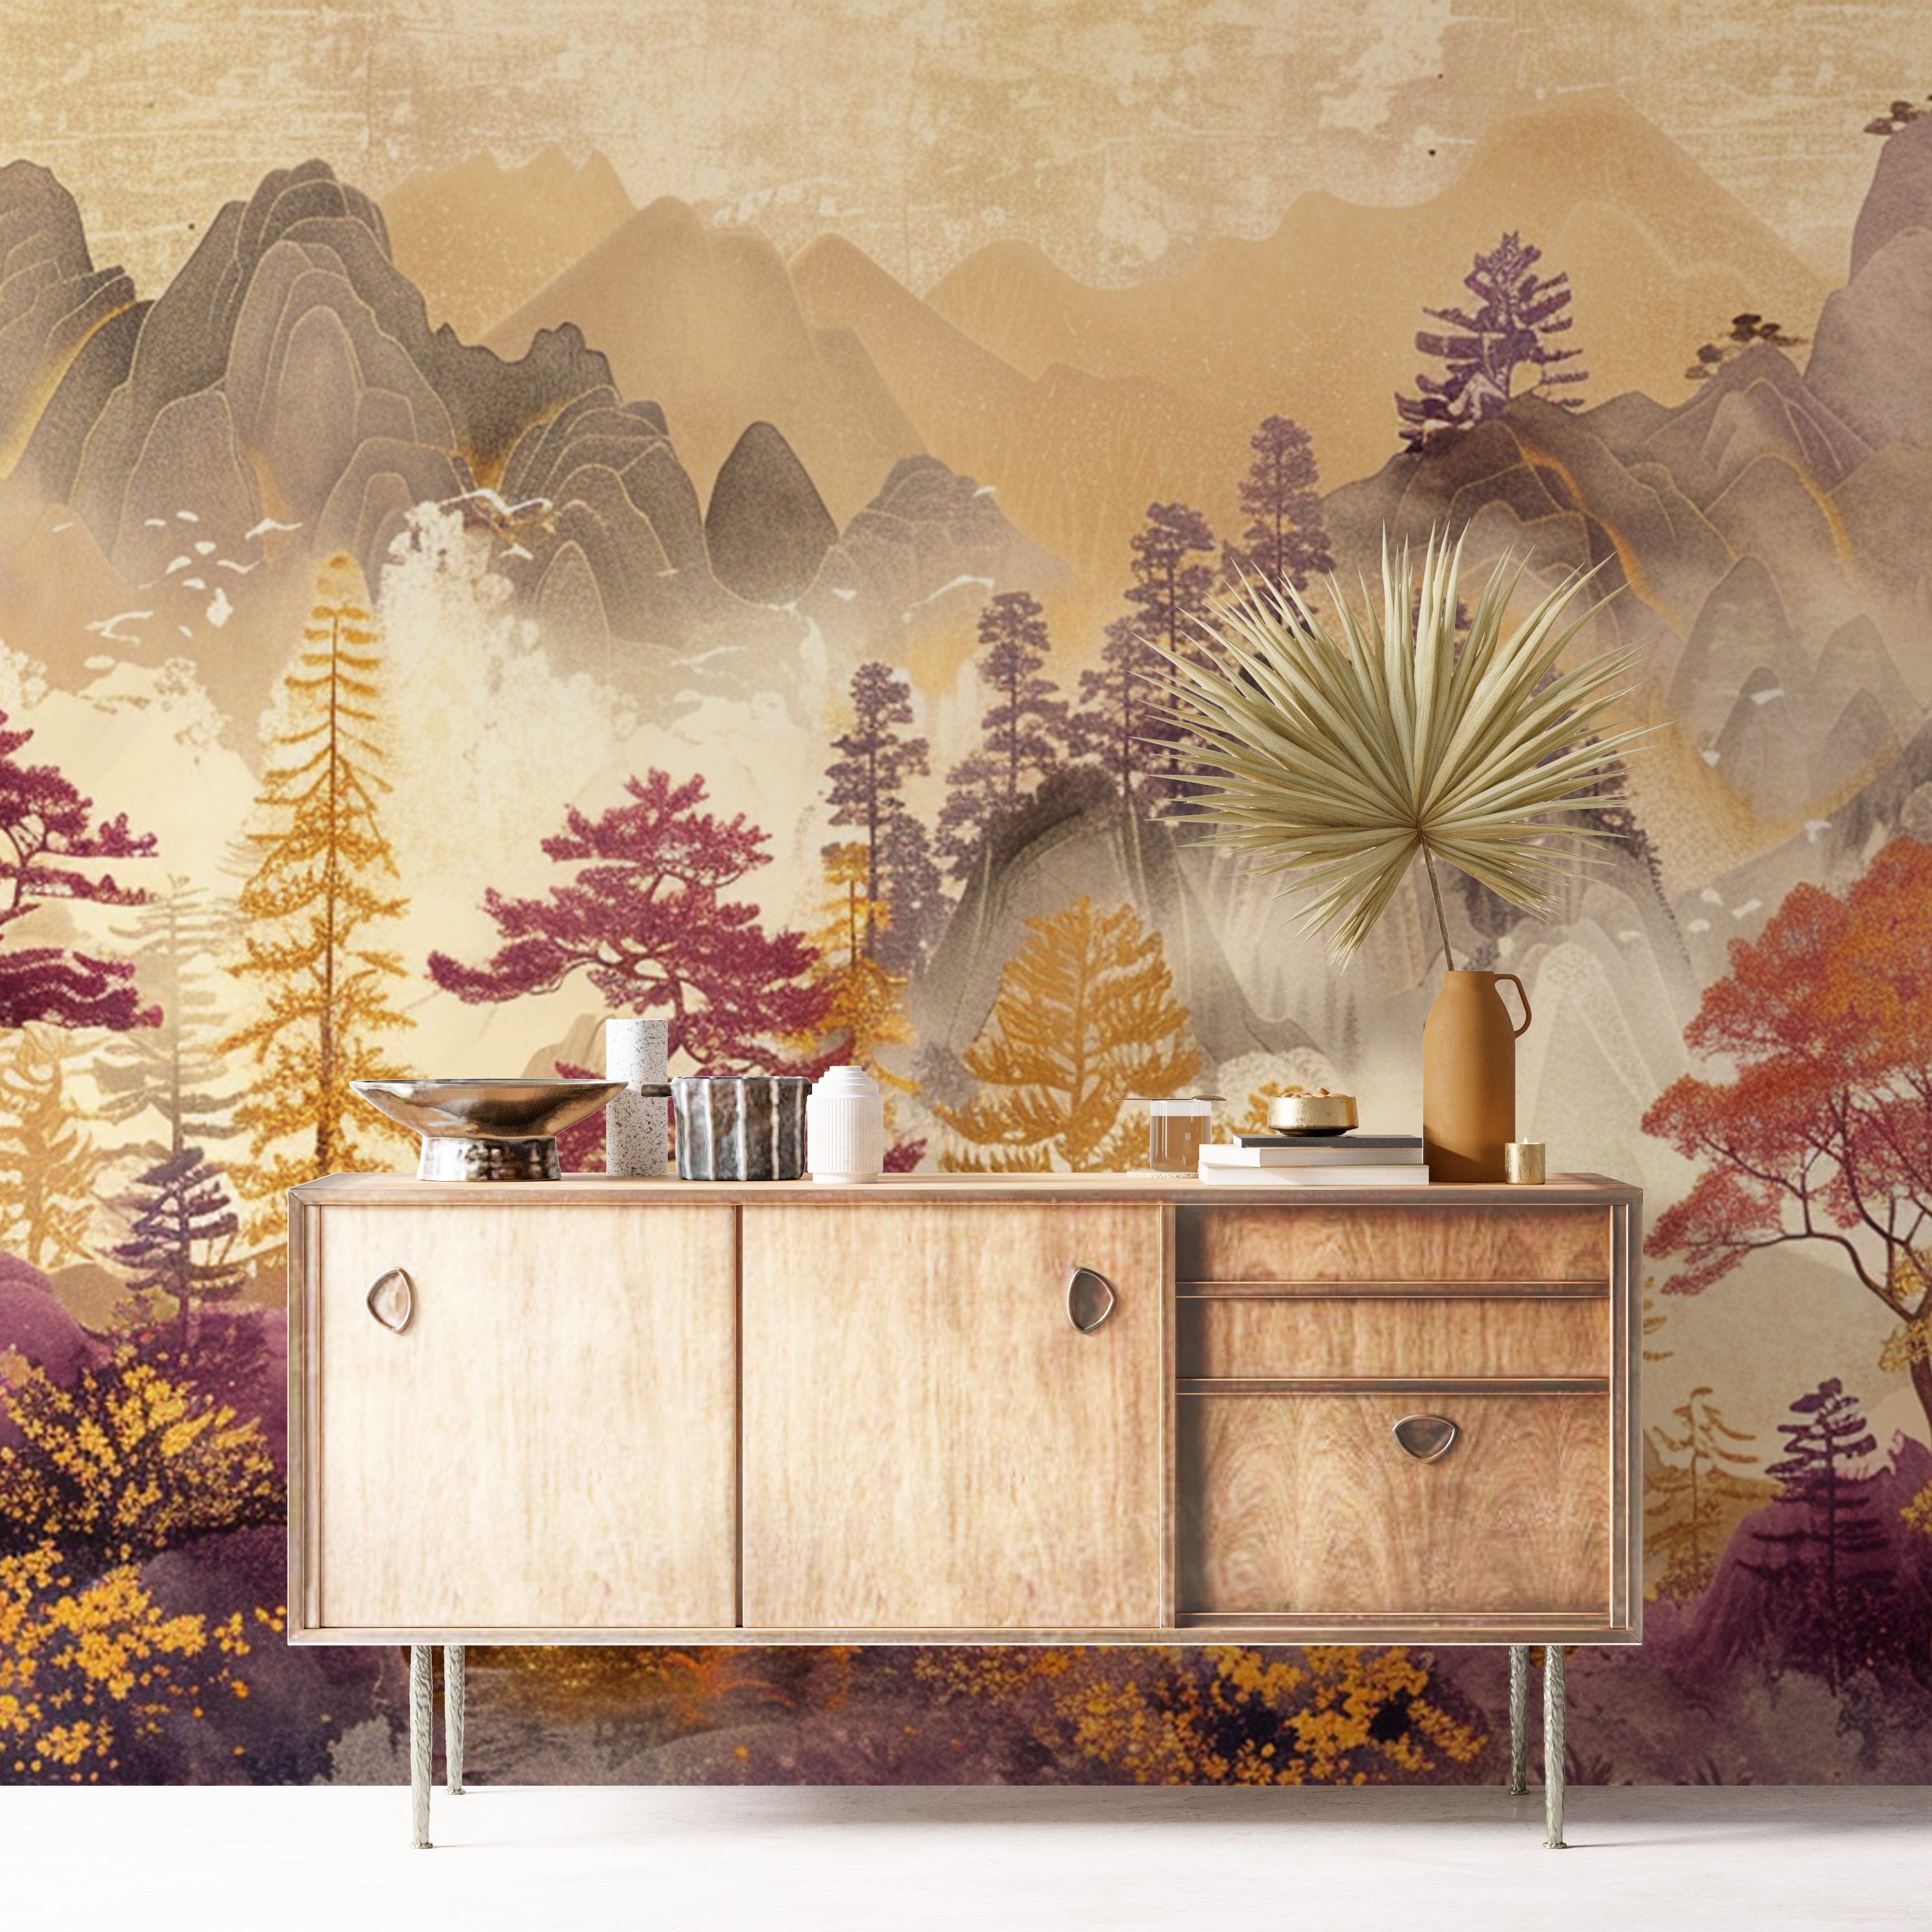 Amber Forest – Hintergrundbild mit asiatischen Herbstliedern